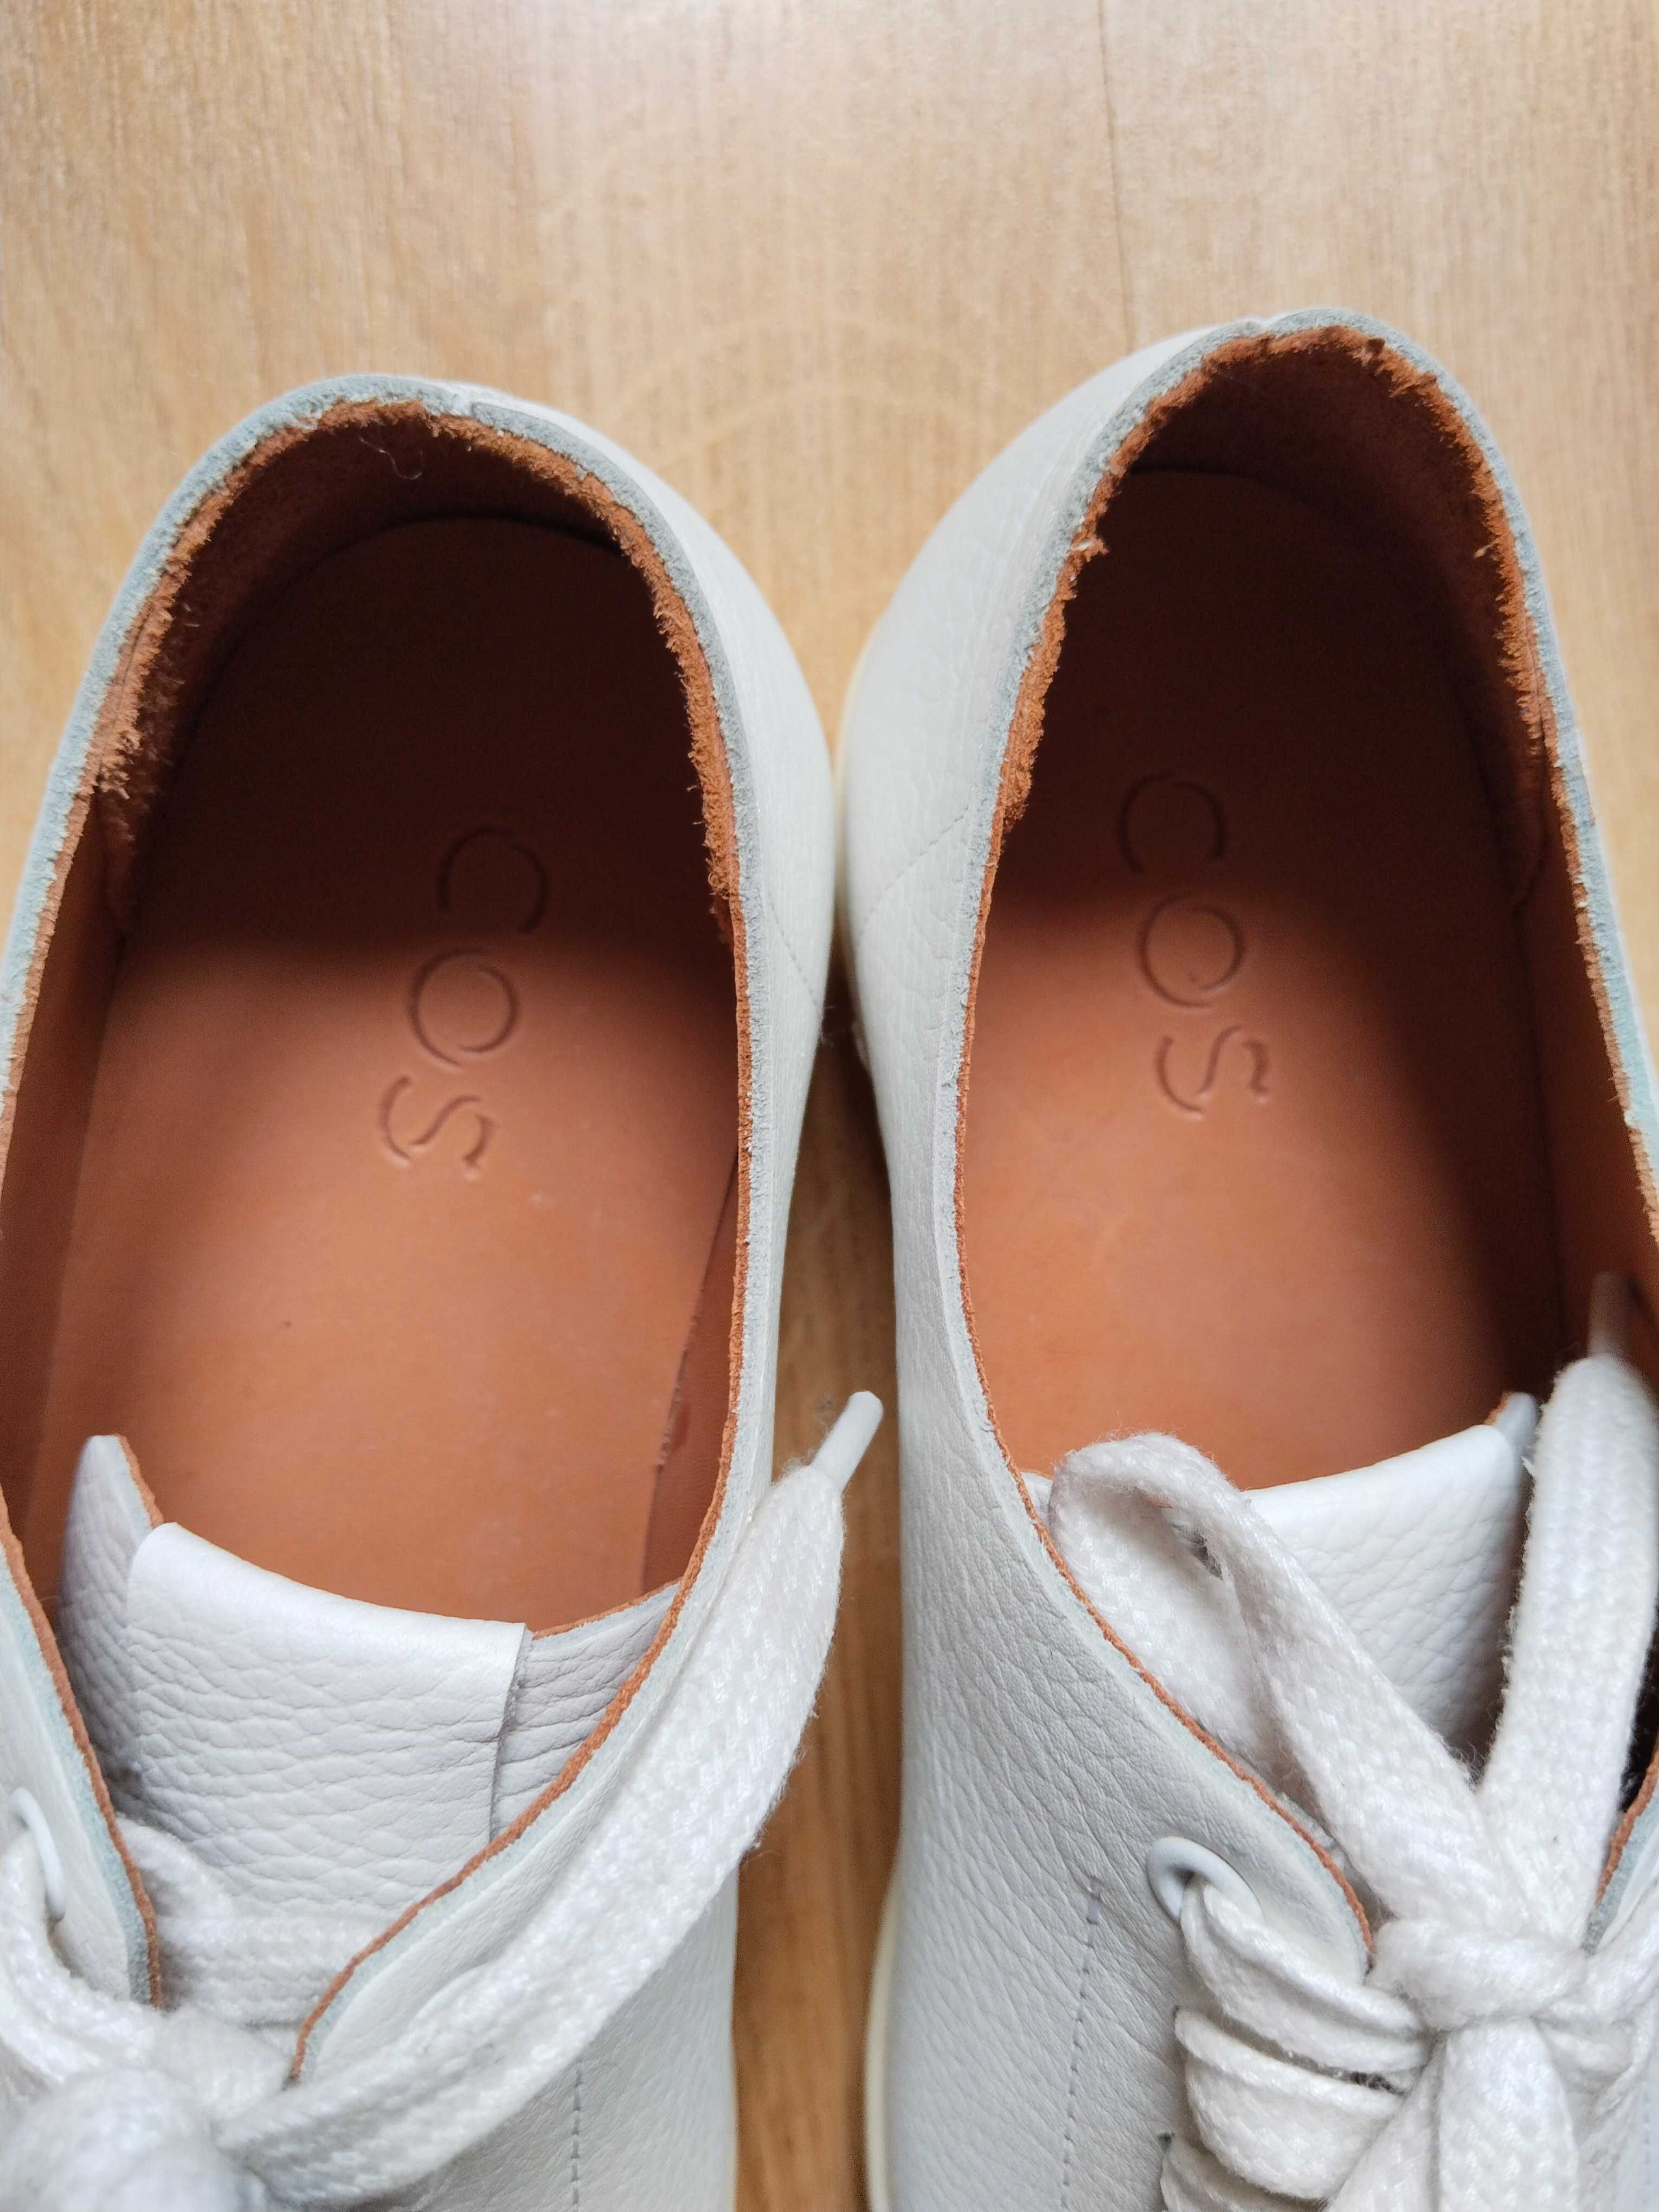 Cos белые кроссовки кеды из натуральной кожи - US 6 - неношенные